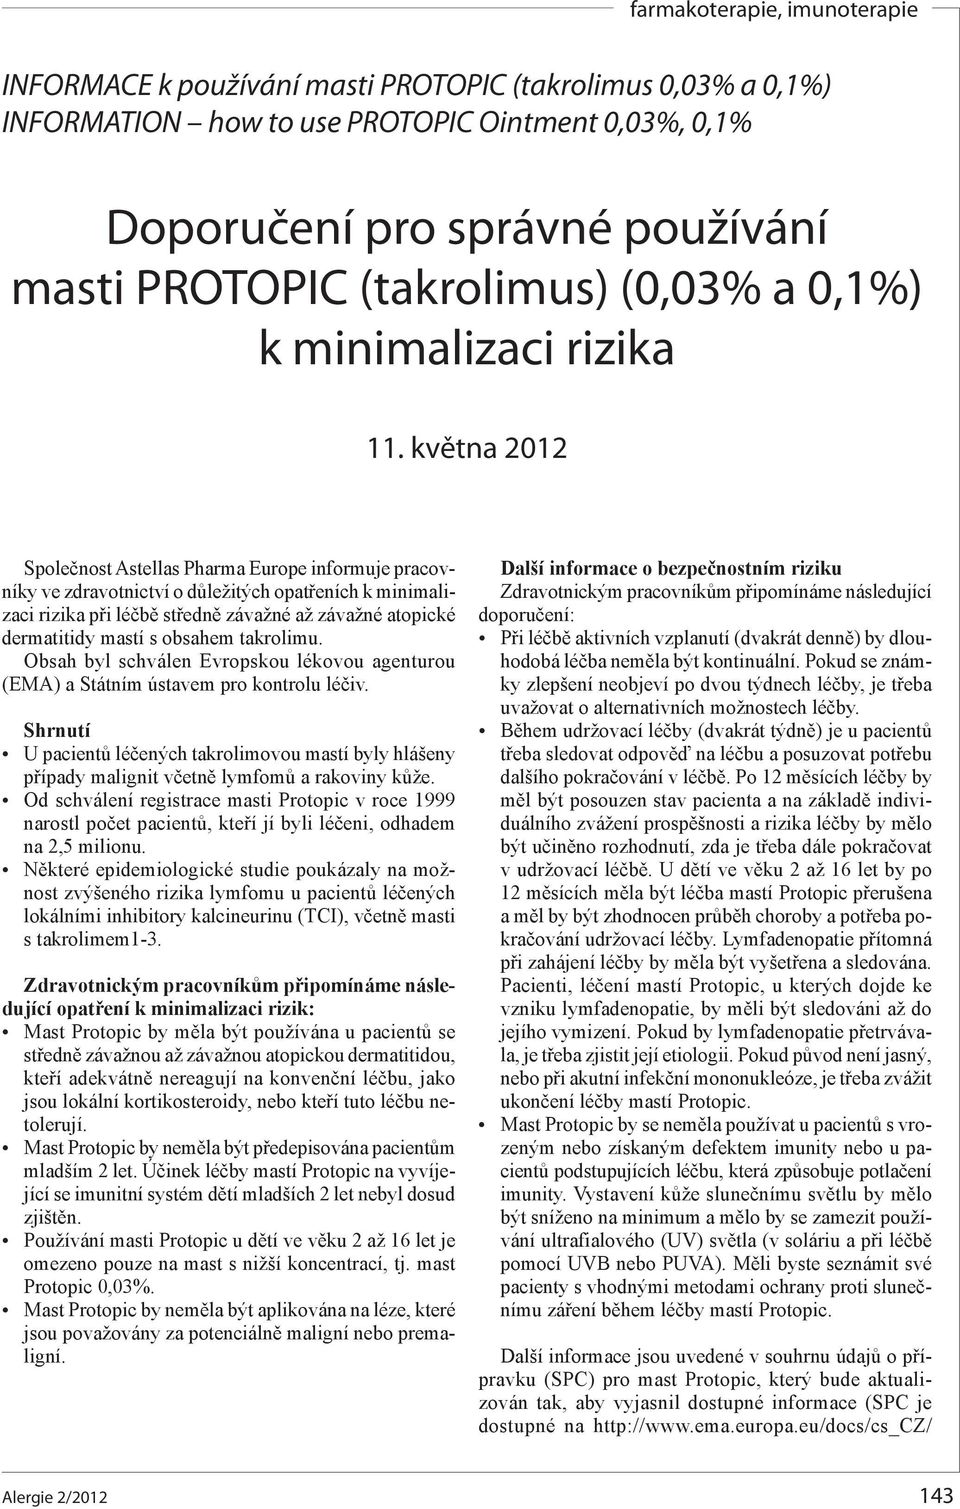 května 2012 Společnost Astellas Pharma Europe informuje pracovníky ve zdravotnictví o důležitých opatřeních k minimalizaci rizika při léčbě středně závažné až závažné atopické dermatitidy mastí s